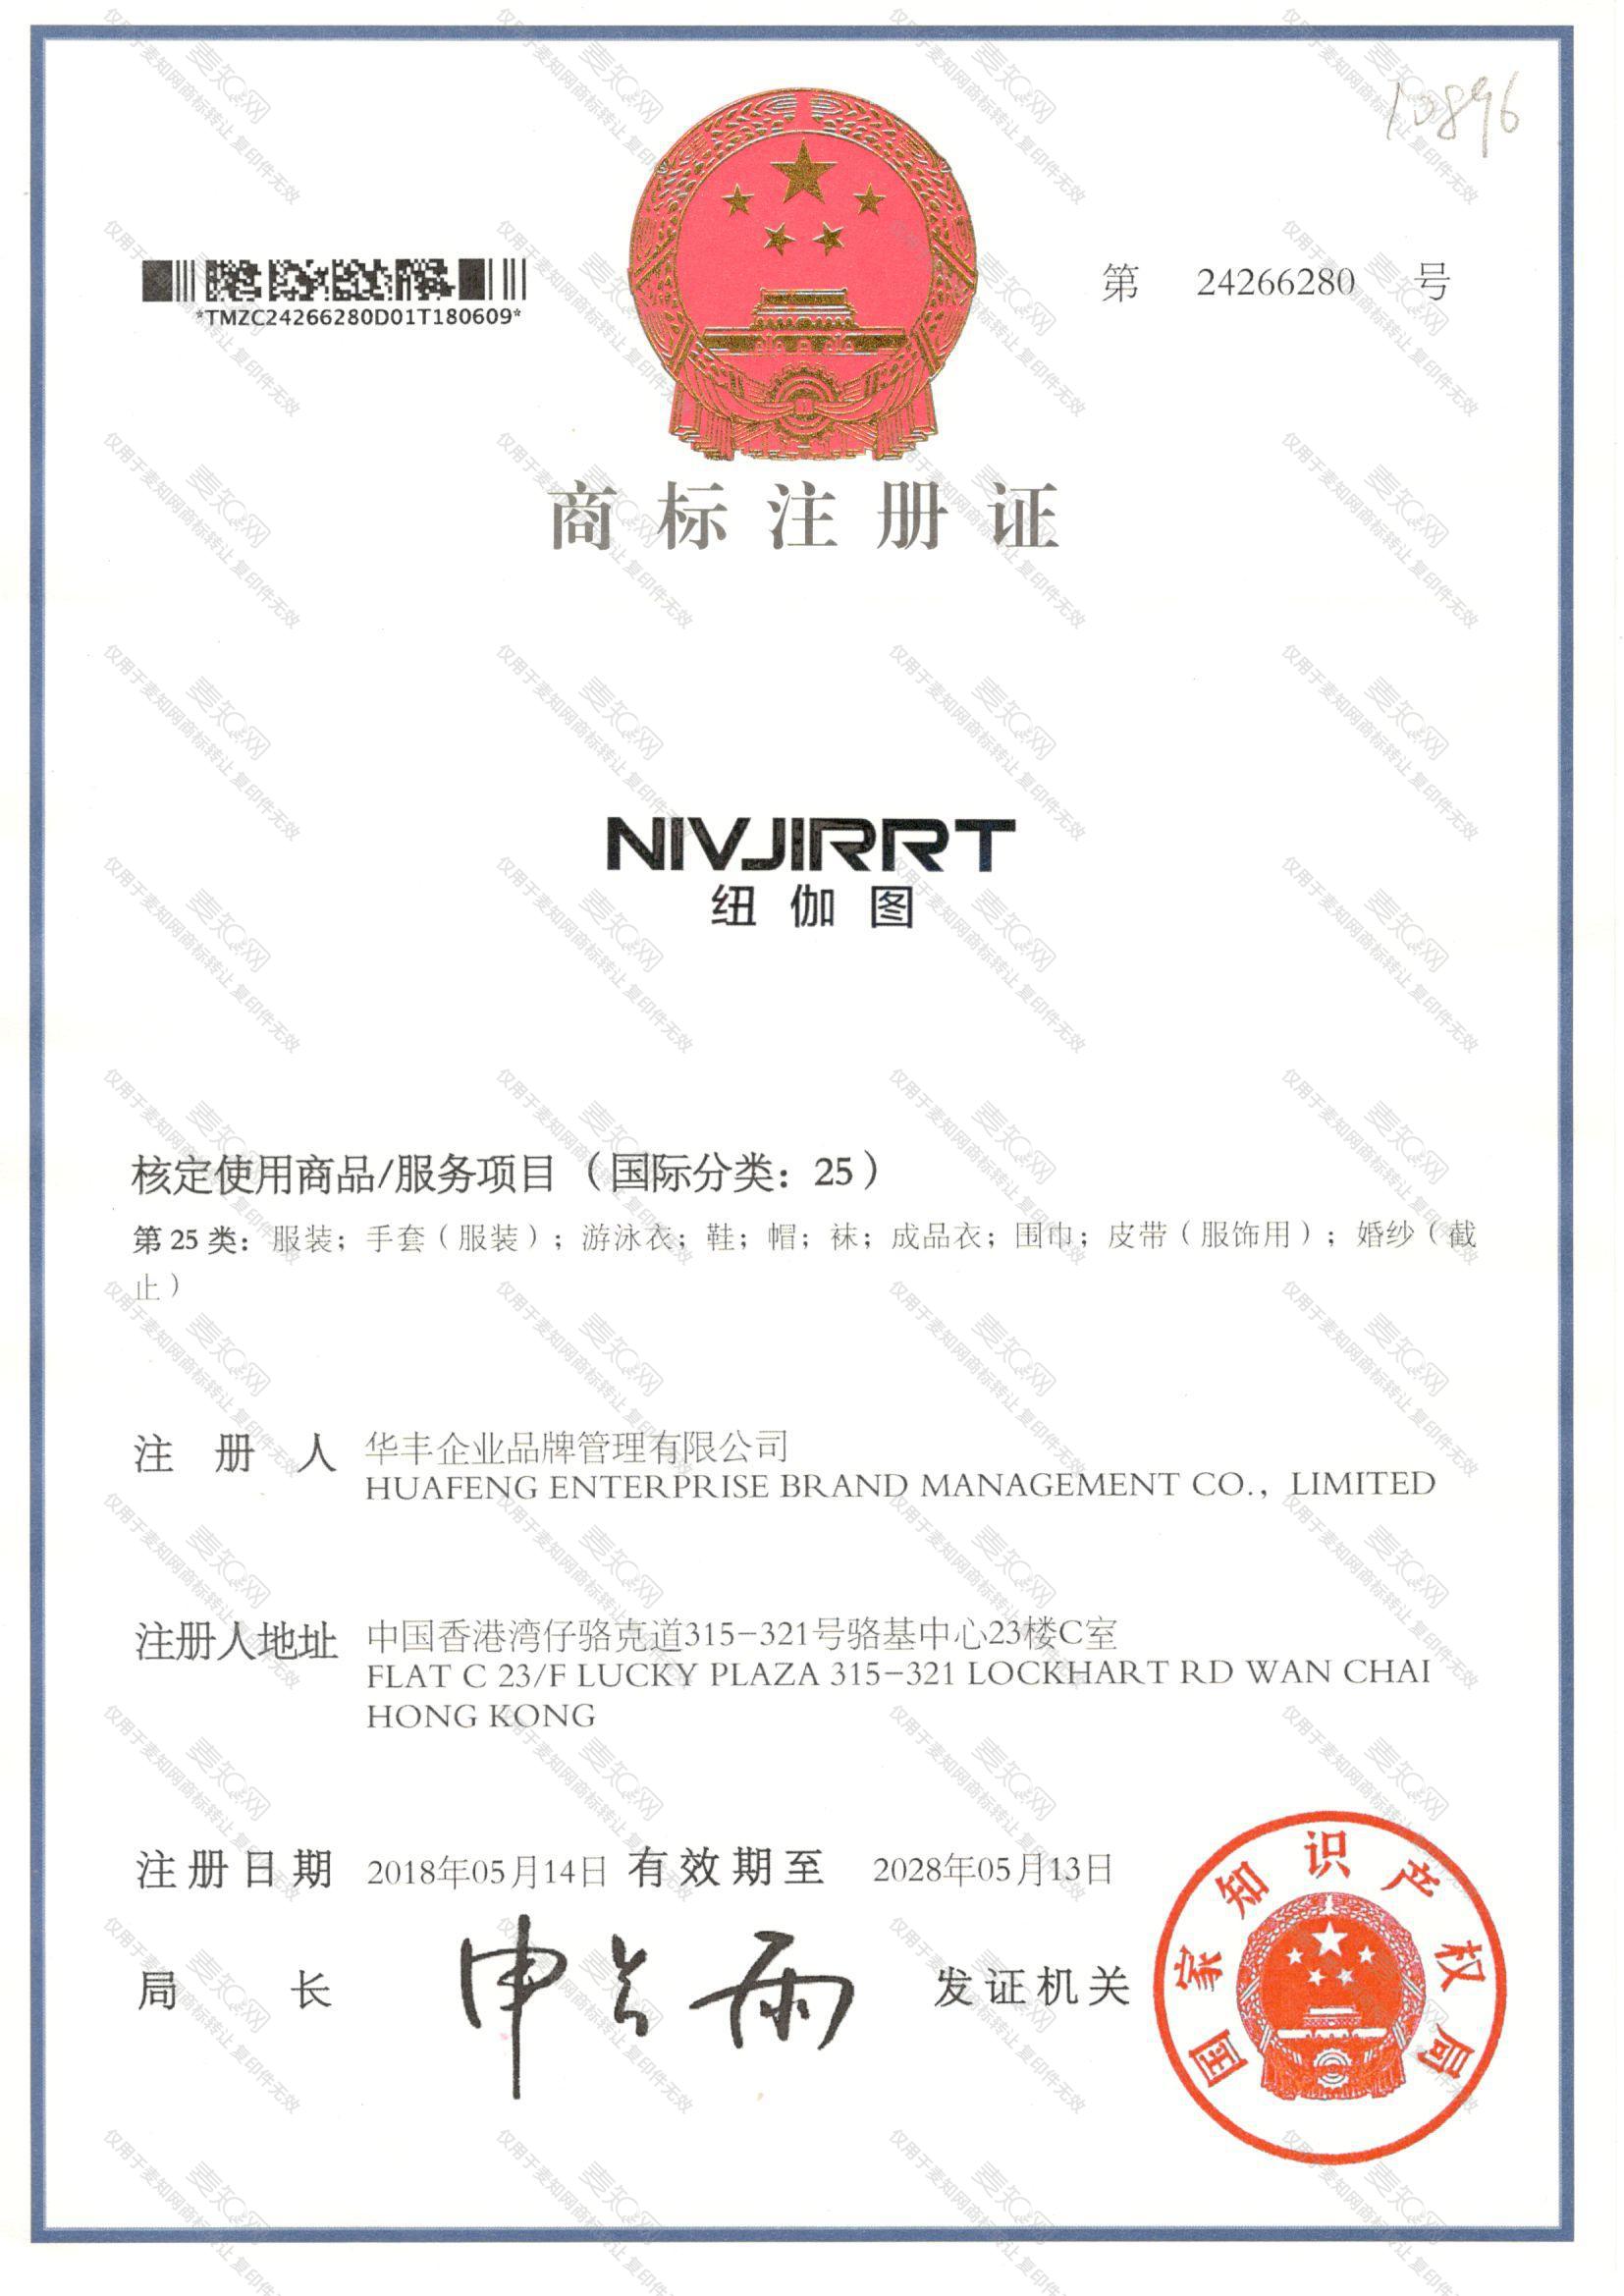 纽伽图 NIVJIRRT注册证